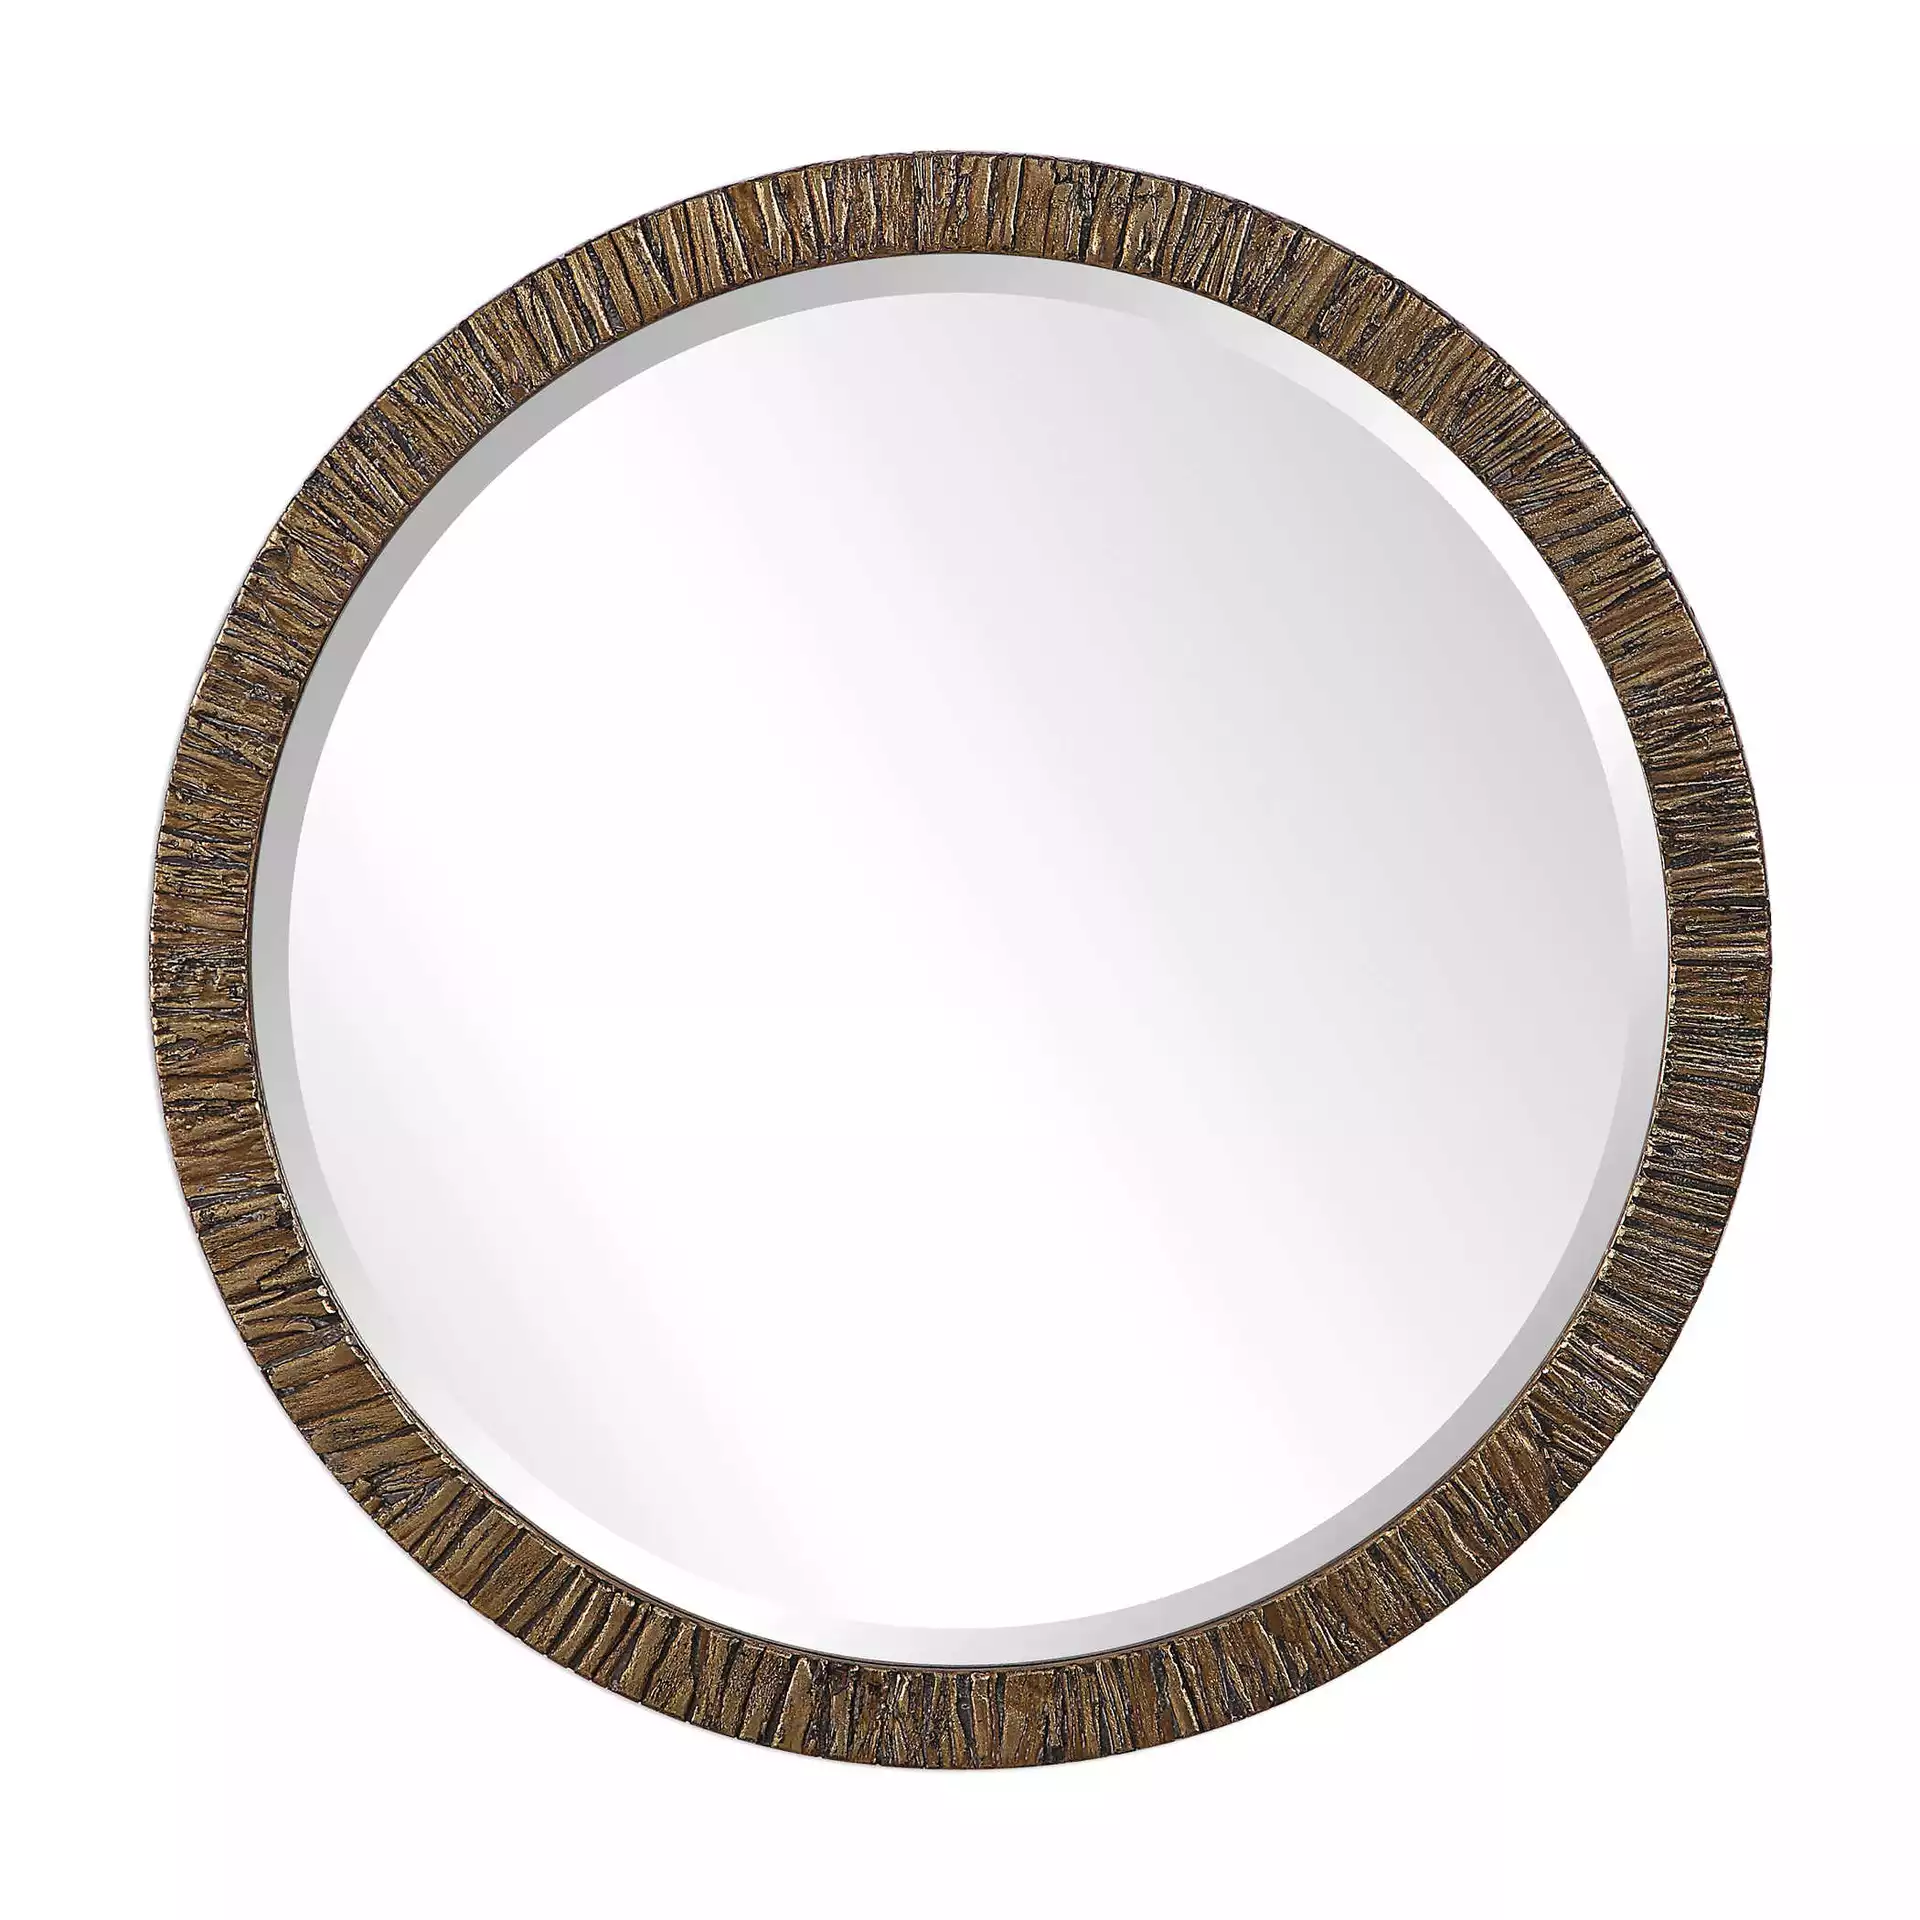 Wayde Round Mirror